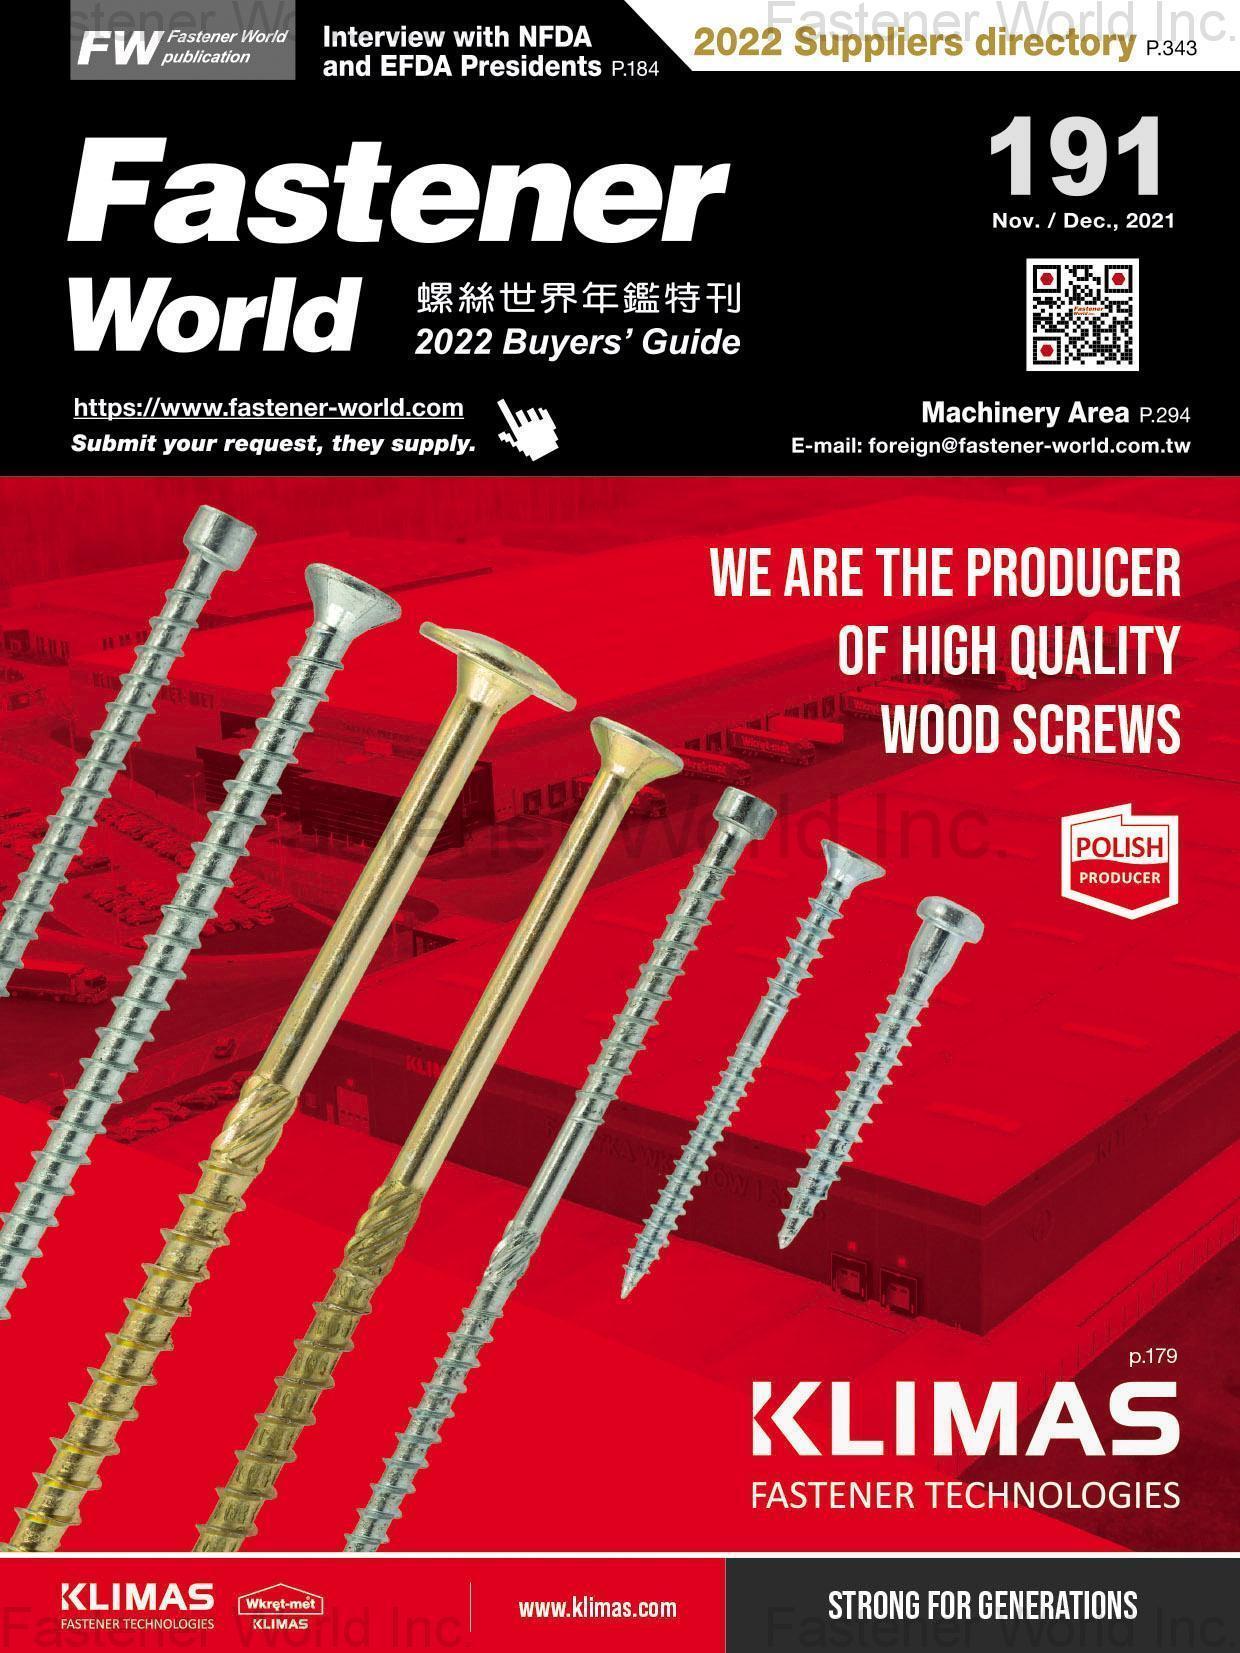 KLIMAS SP. Z O.O. , High Quality Wood Screws